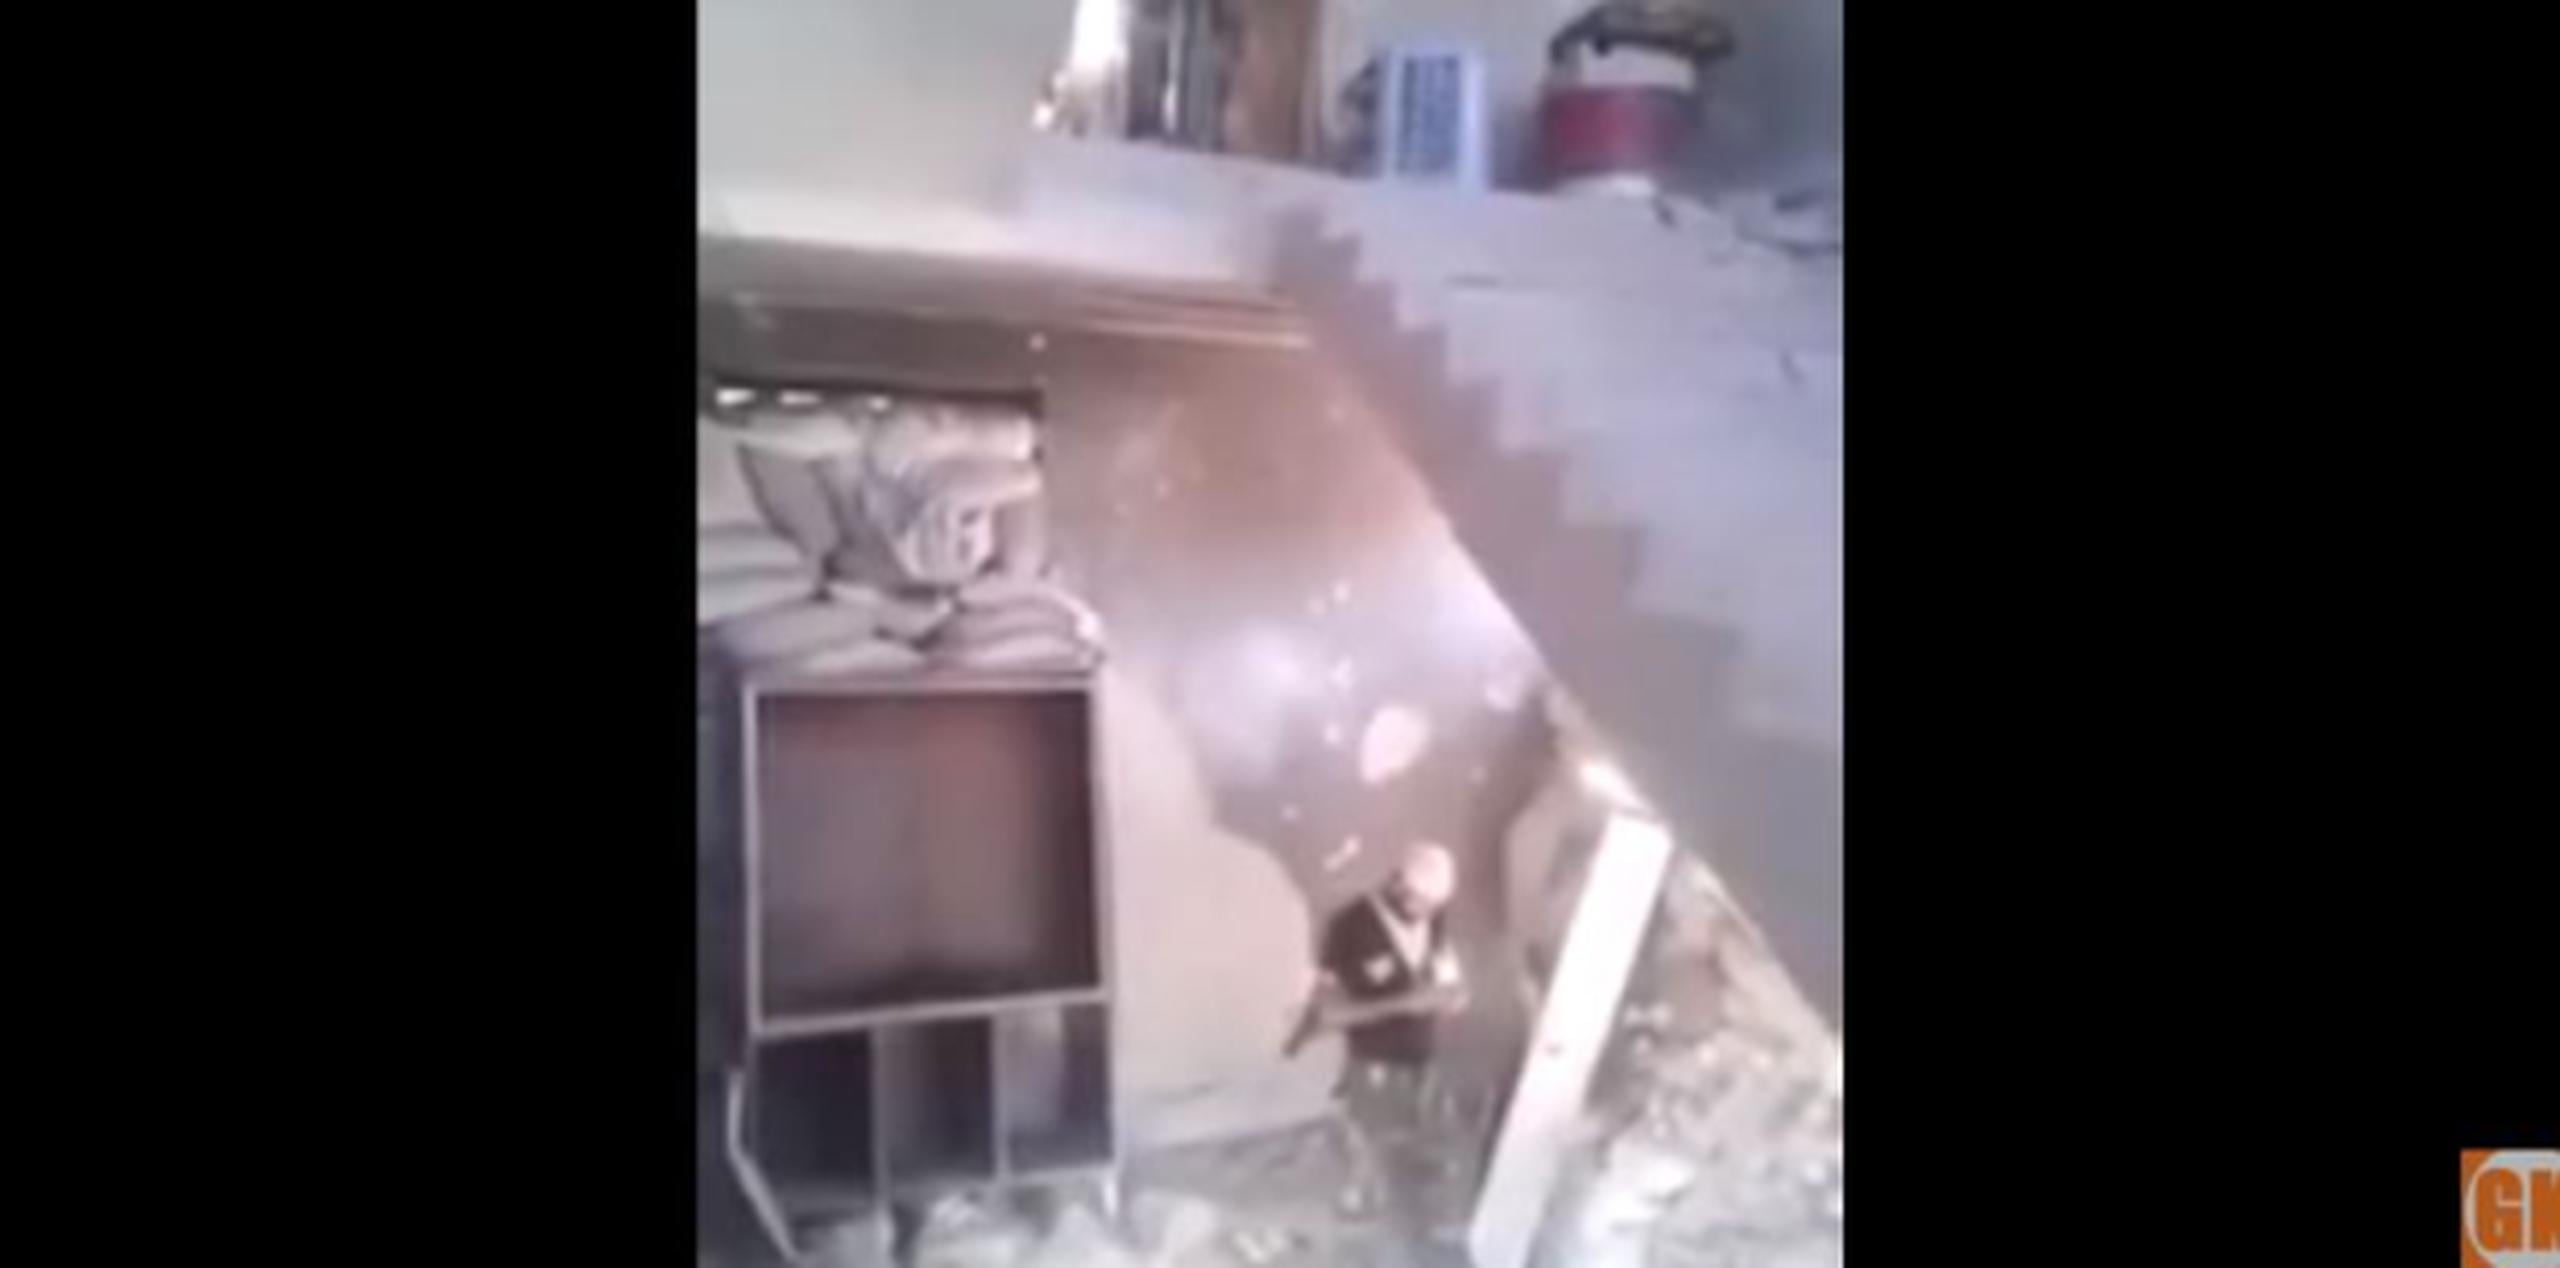 Uno de los habitantes del lugar sujetó el misil desde el segundo piso y lo soltó, pero jamás explotó. (YouTube)